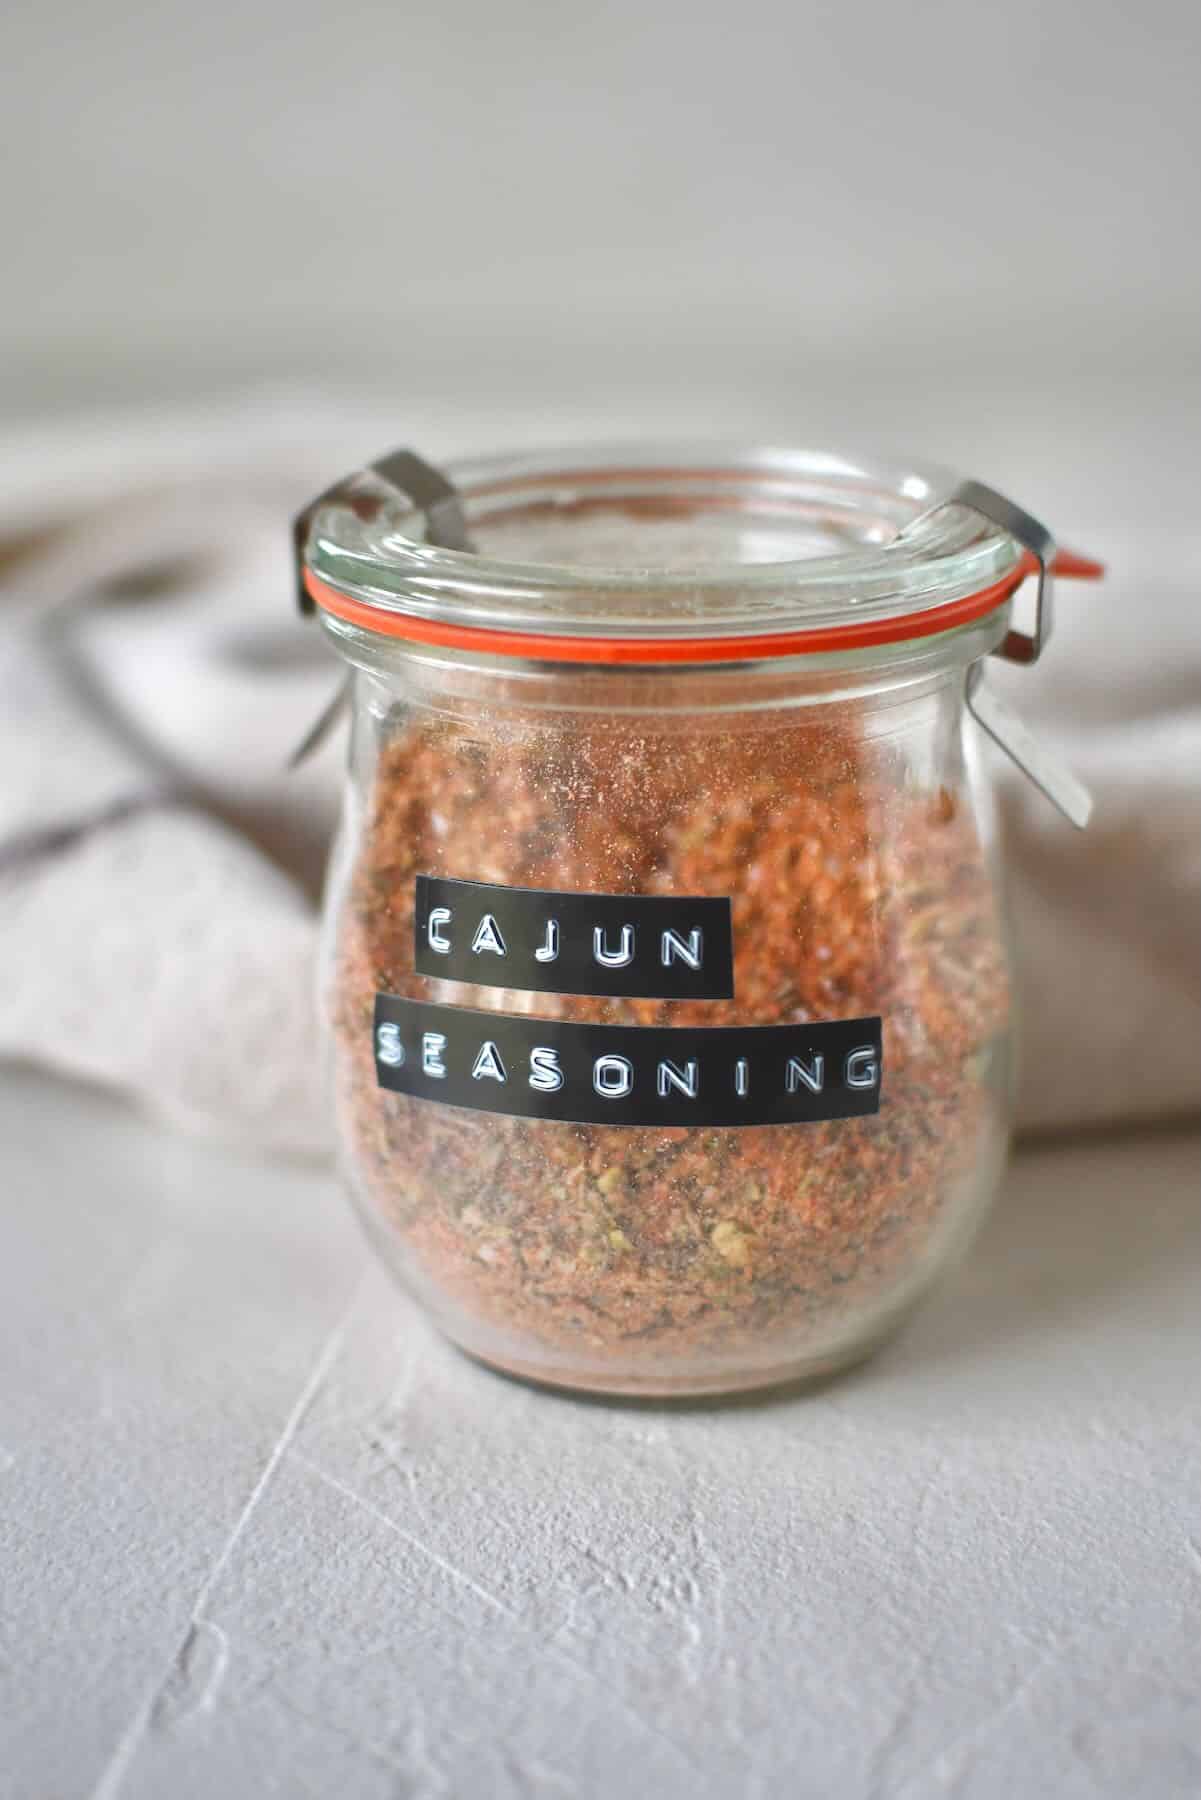 Blended Cajun Seasoning in a jar.